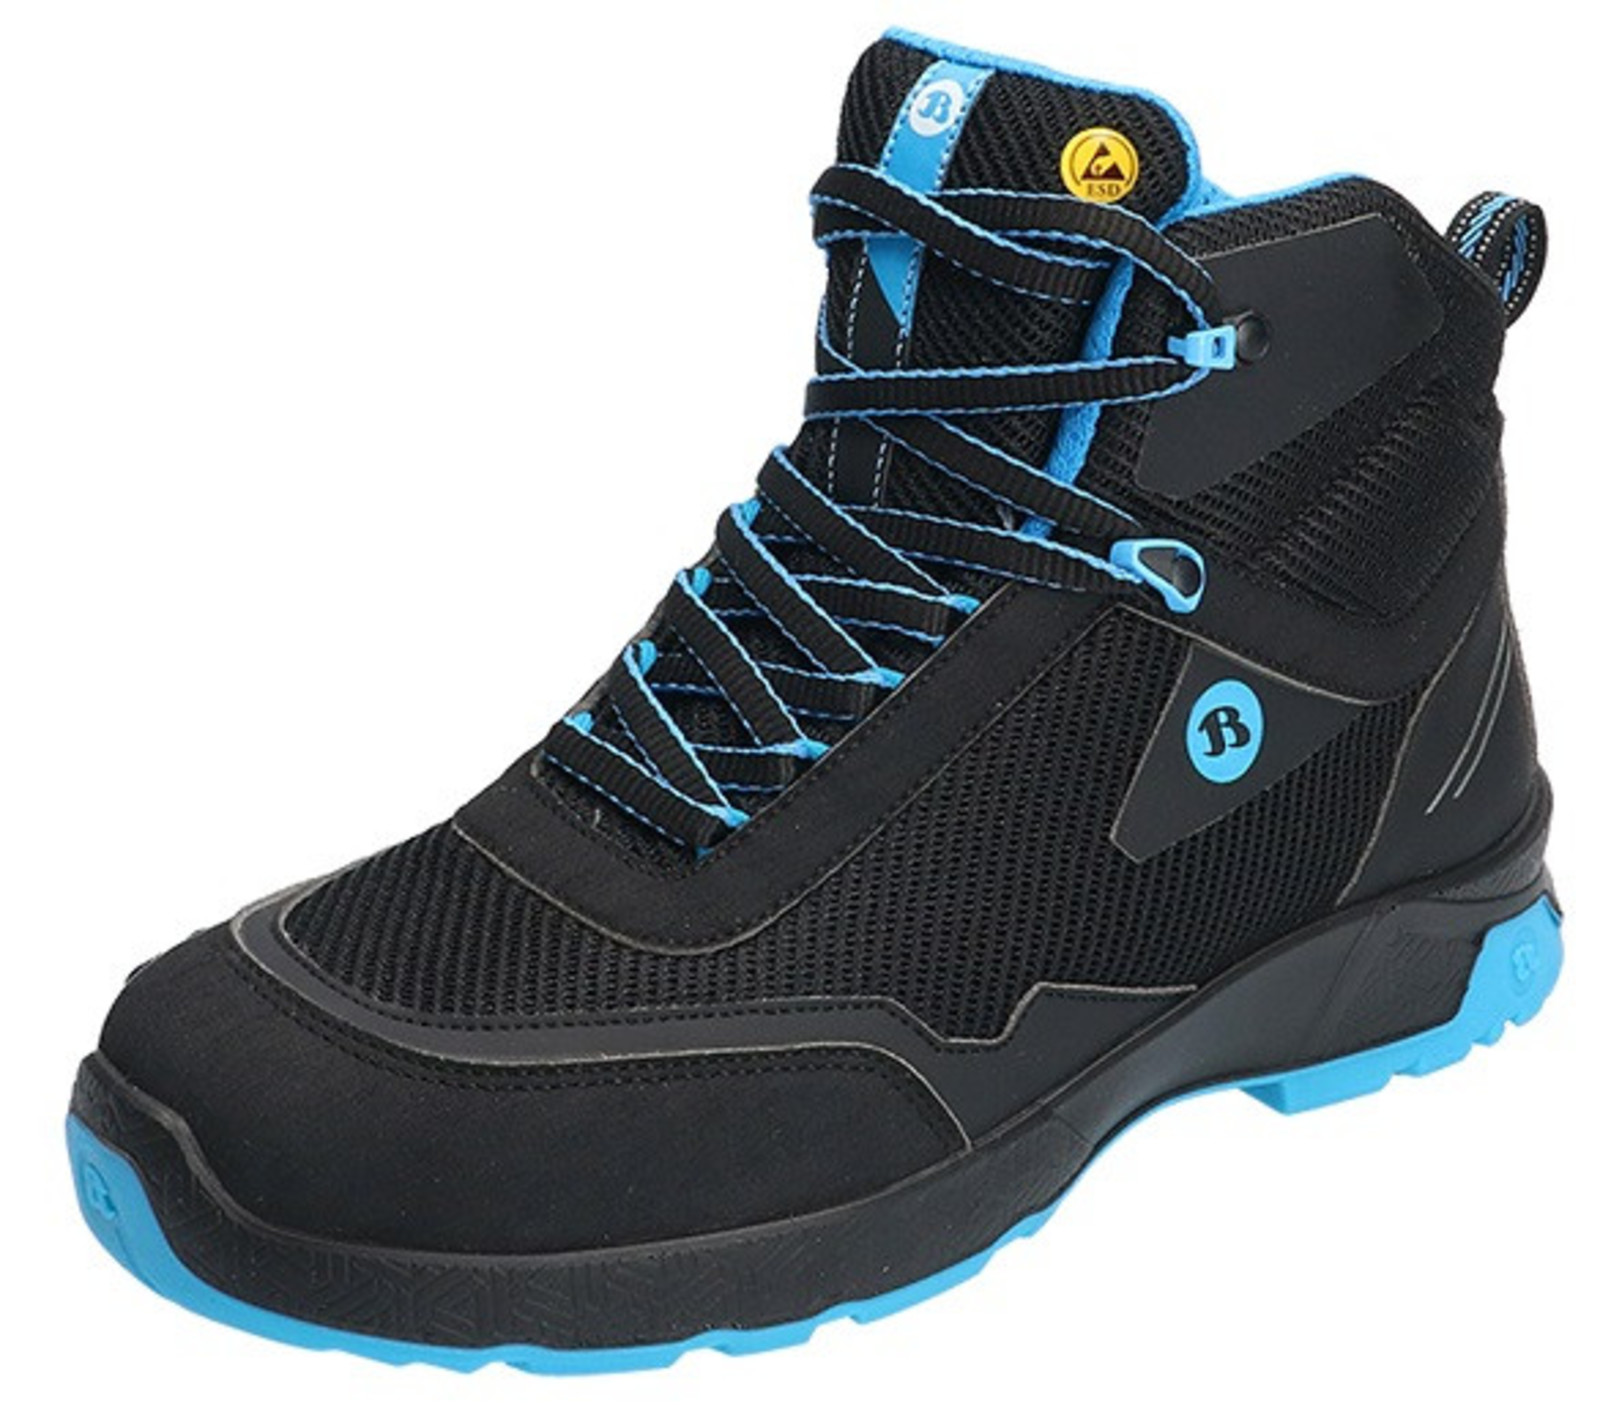 Bezpečnostná členková obuv Baťa Summ One S3 ESD - veľkosť: 39, farba: čierna